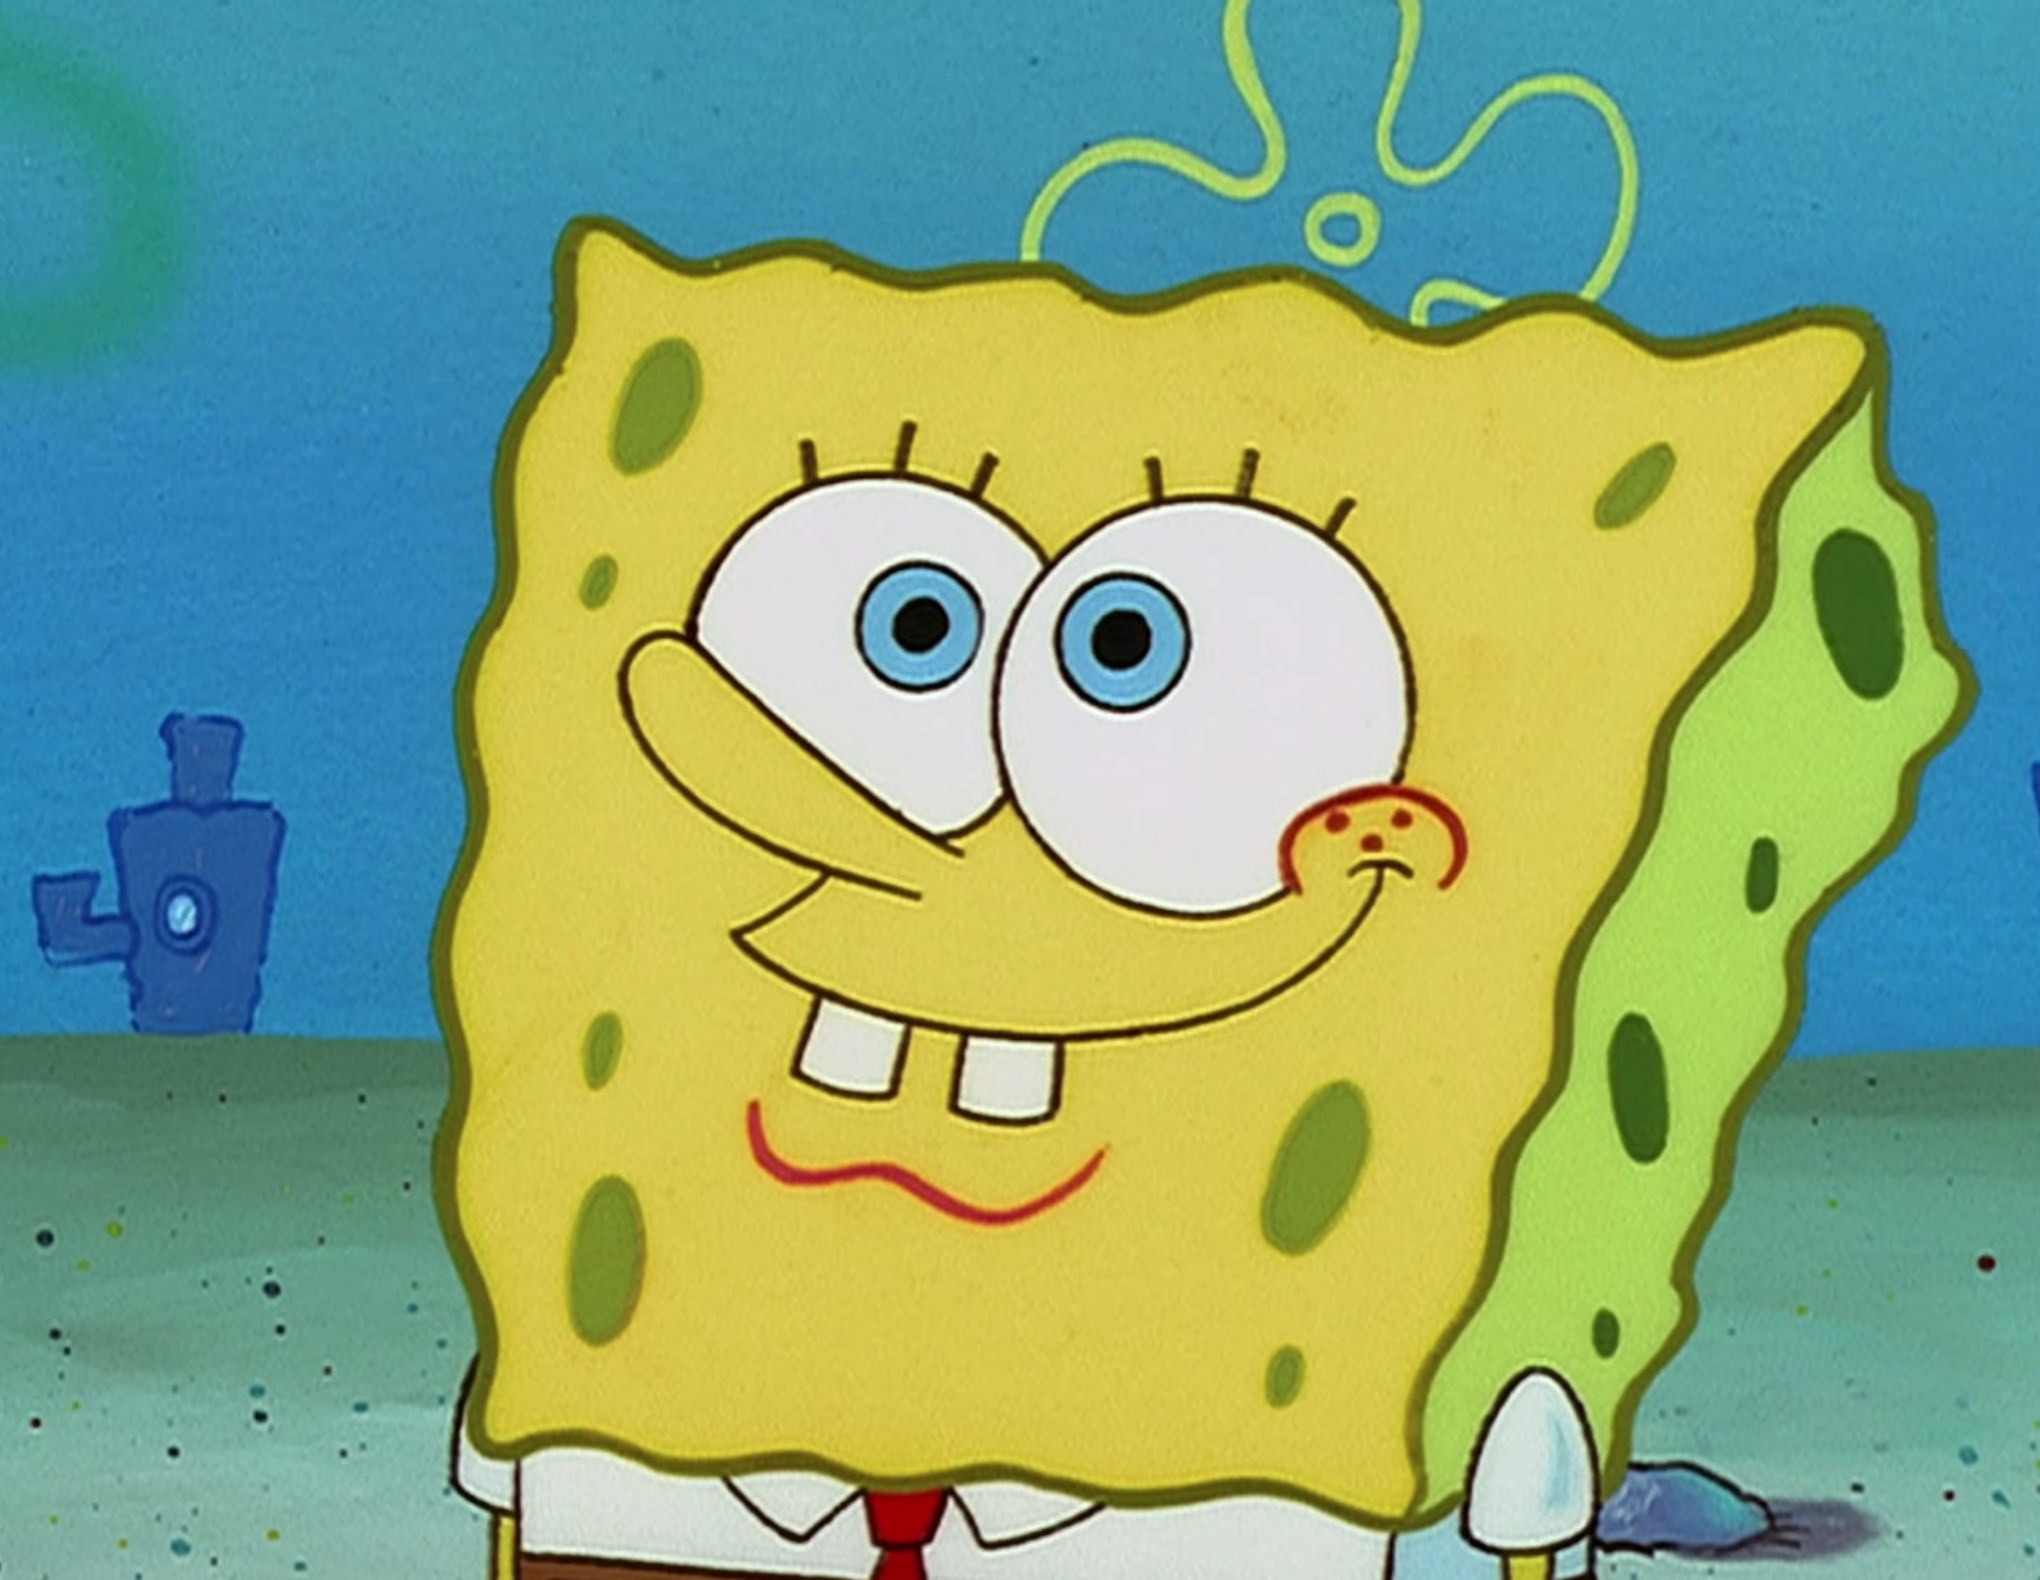 SpongeBob watching Patrick blow bubbles during &quot;SpongeBob SquarePants&quot; season 1, episode 2, &quot;Bubblestand&quot;